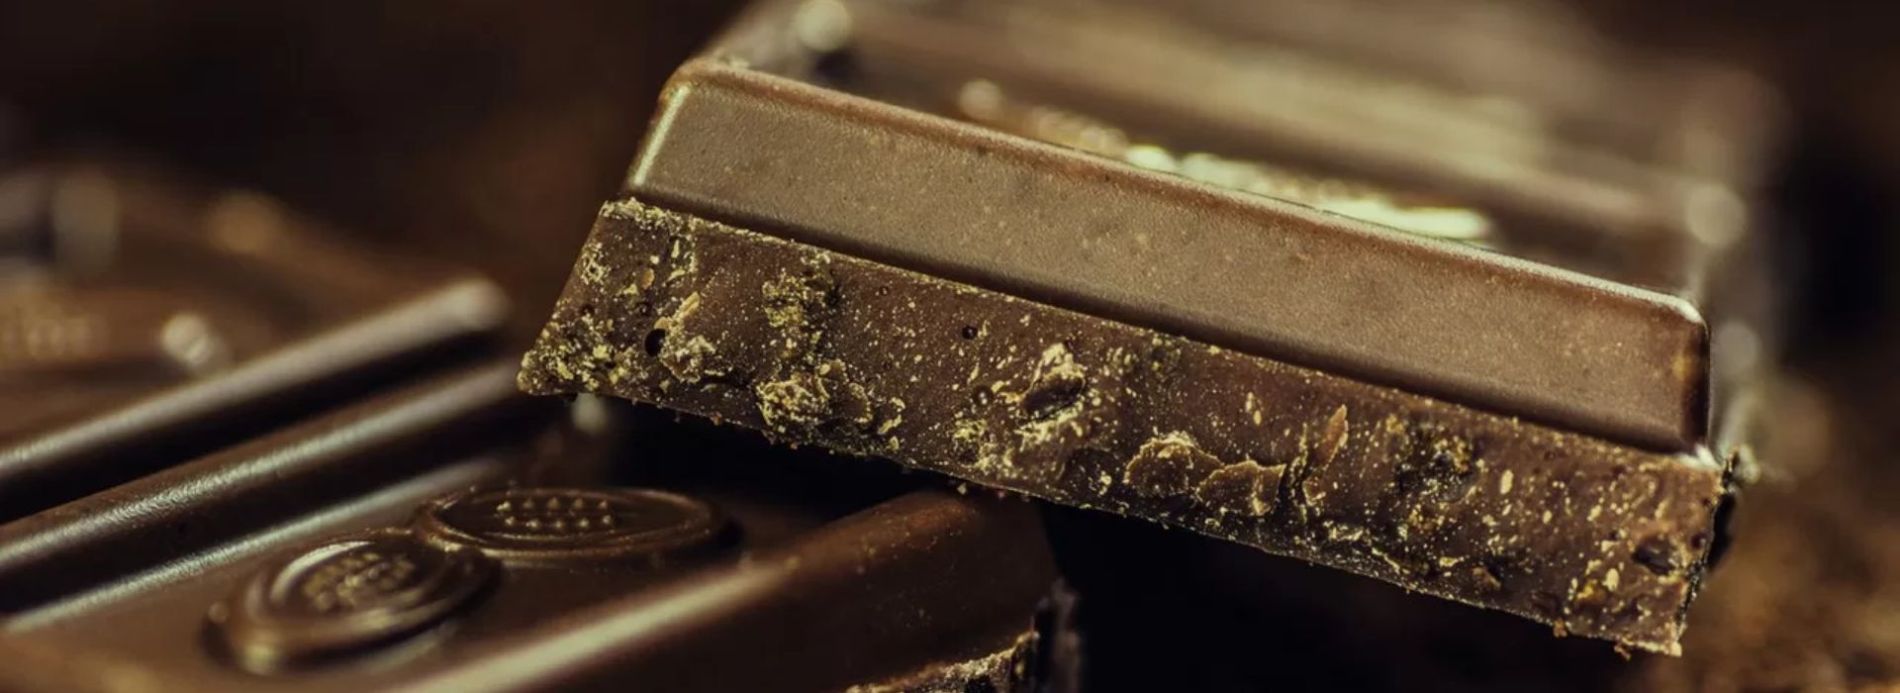 Closeup of chocolate bar